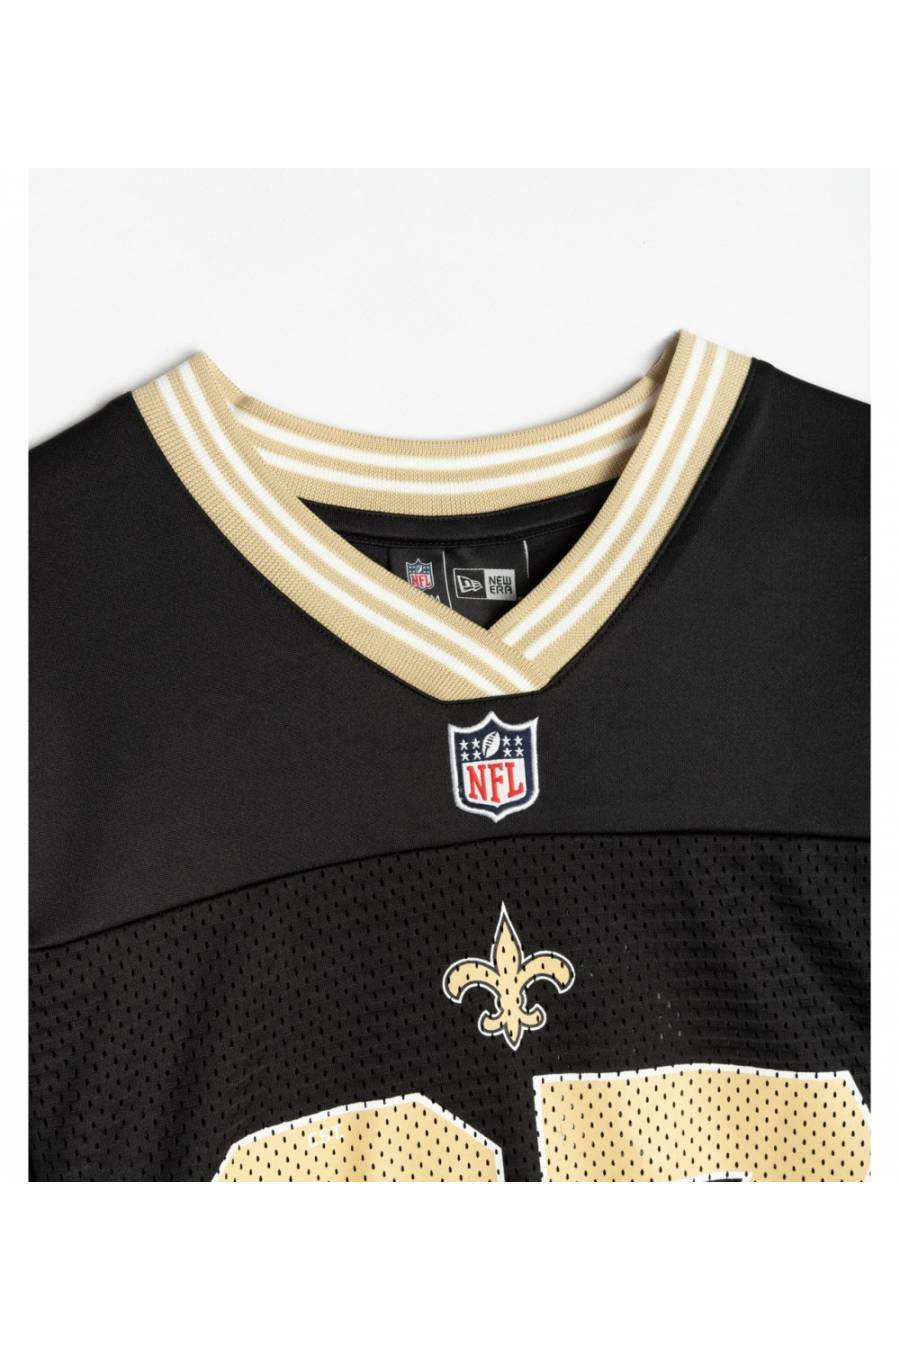 Camiseta New Era NFL New Orleans Saints Oversized 12572537